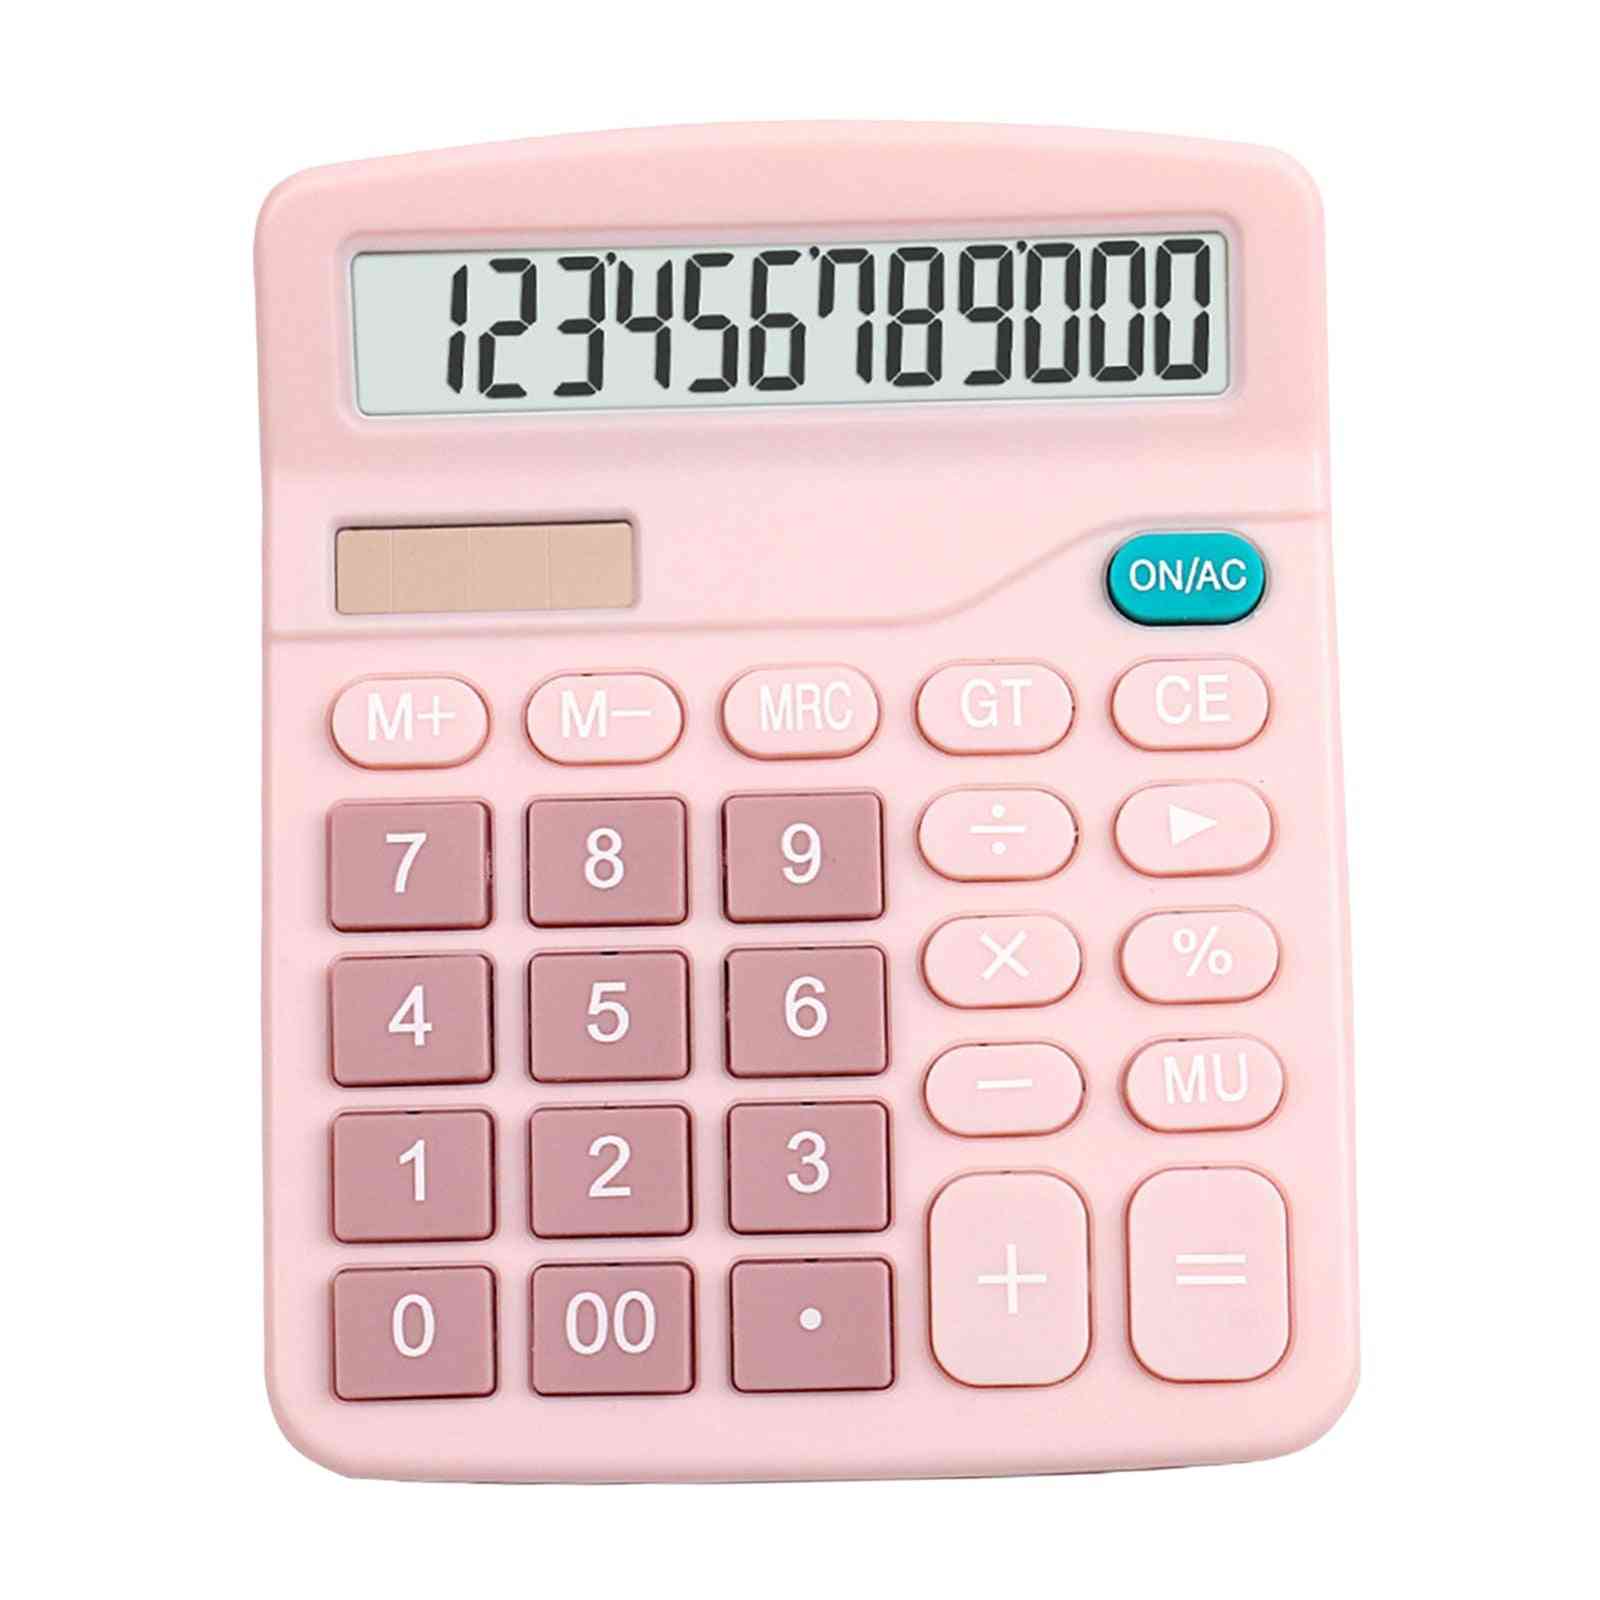 12 -miestna elektronická stolná kalkulačka s veľkou obrazovkou